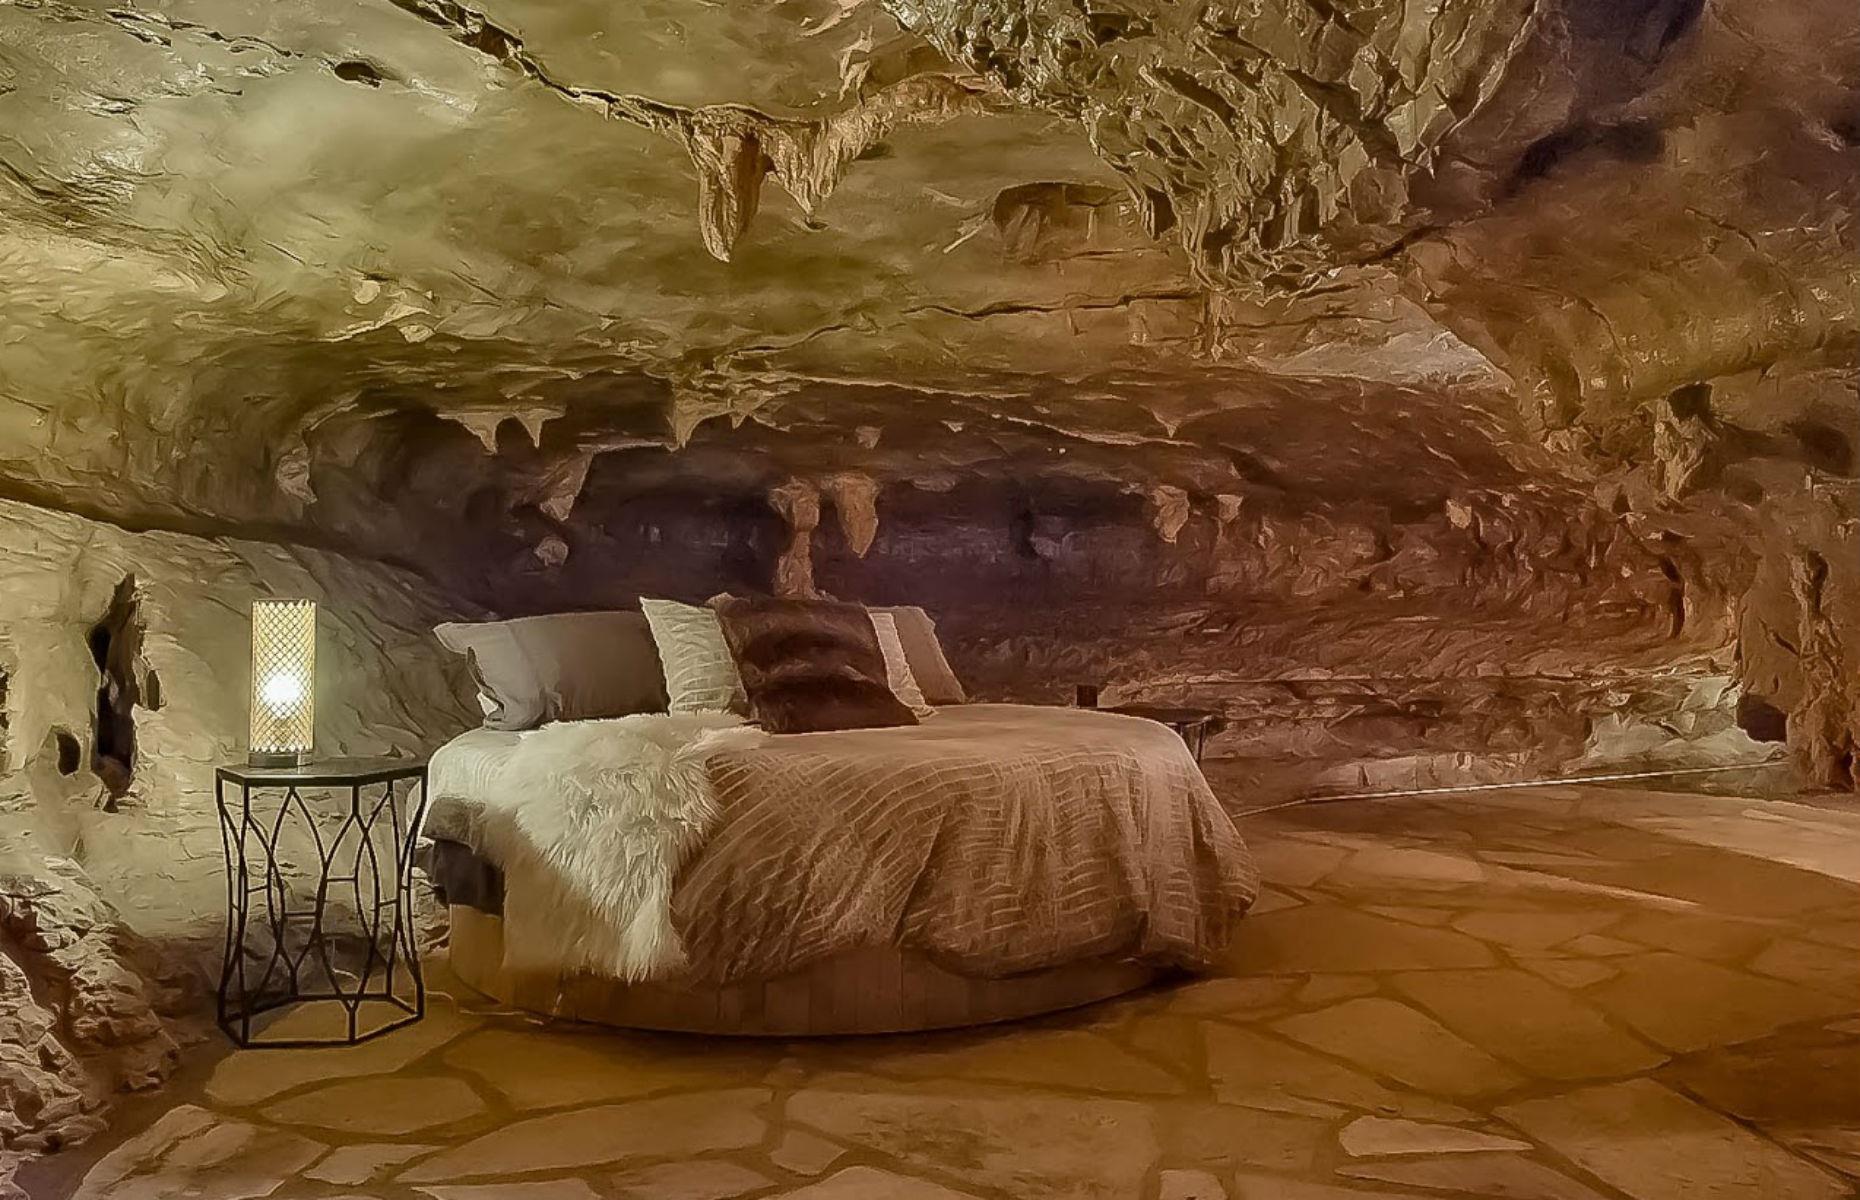 Cave home. Гостиница Beckham Creek Cave Lodge. Beckham Creek Cave Lodge, США, Арканзас. Пещерный стиль в интерьере. Комната в пещере.